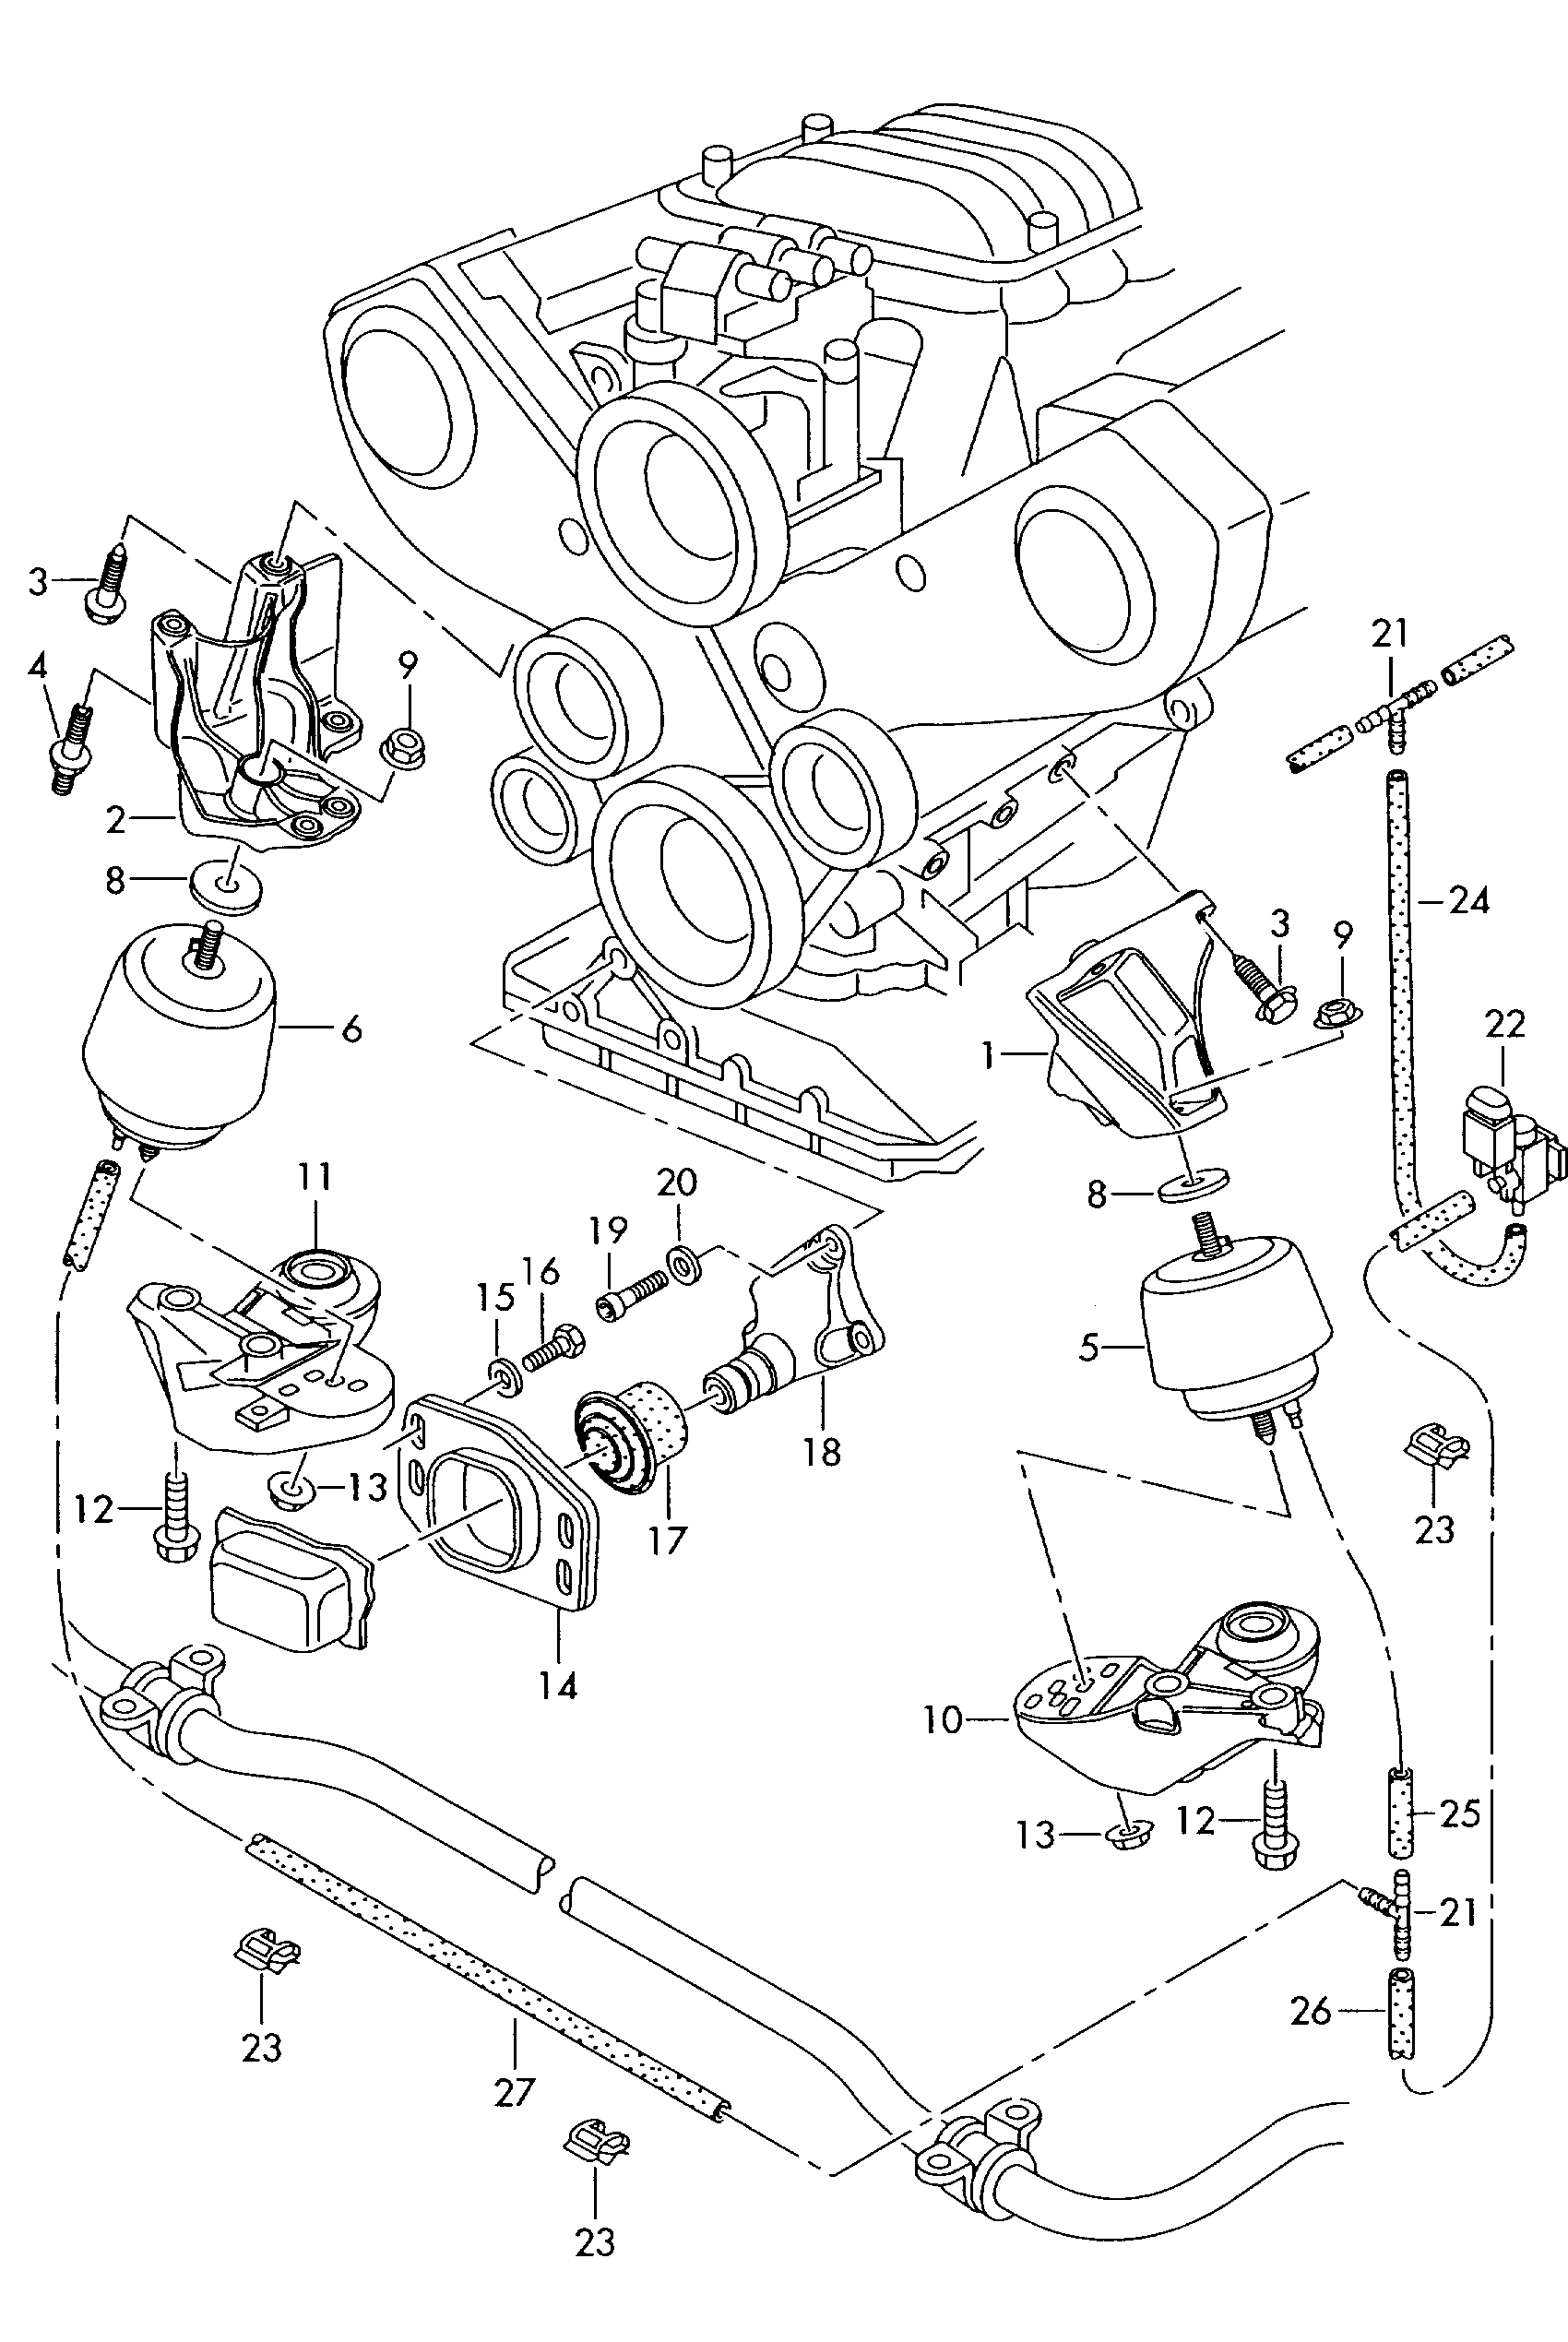 Befestigungsteile für Motor<br>und Getriebe 4,0Ltr. - Passat/Variant/Santana - pa